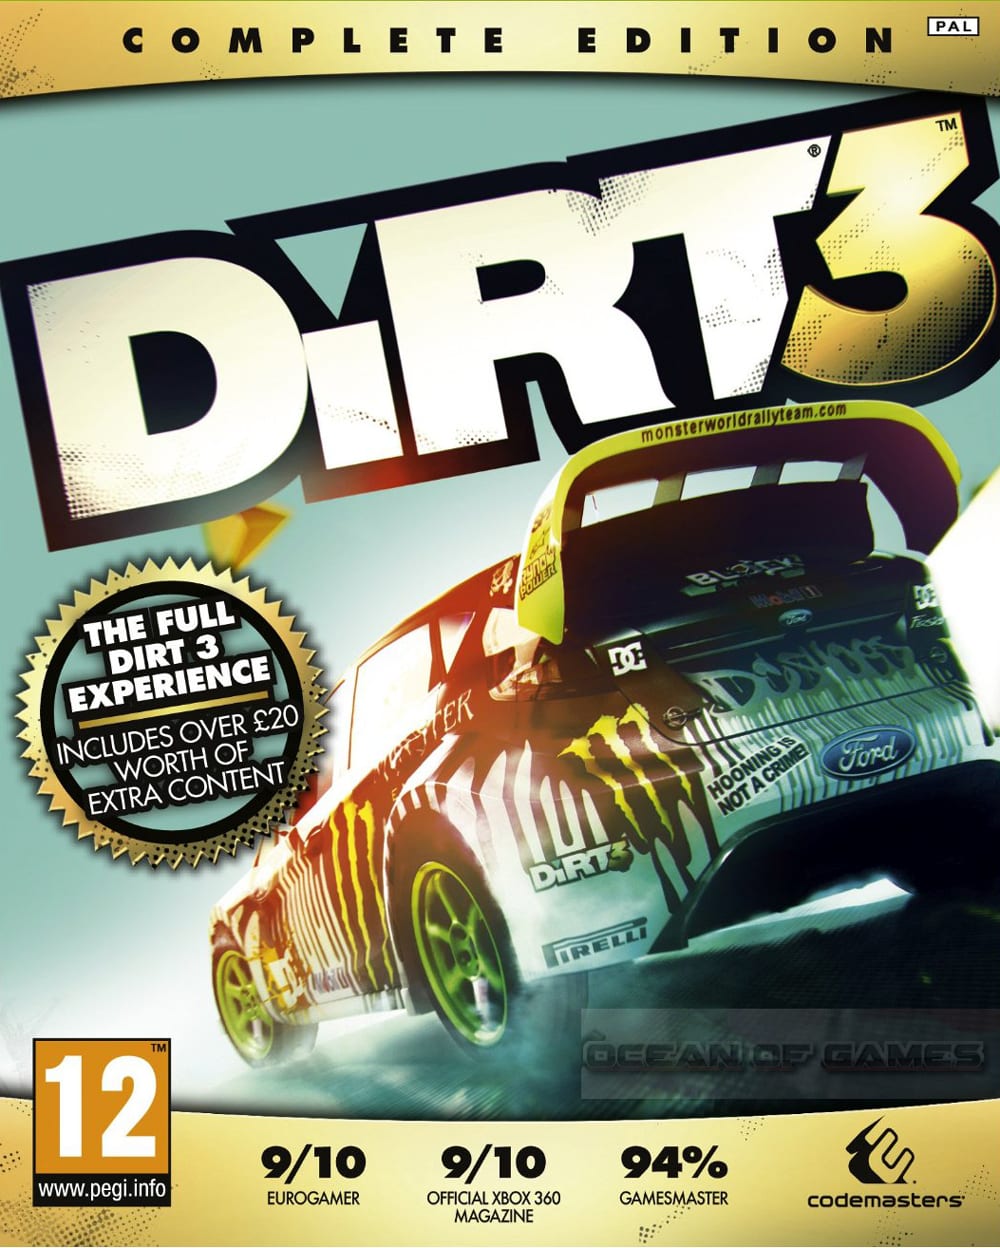 dirt 3 mac download free